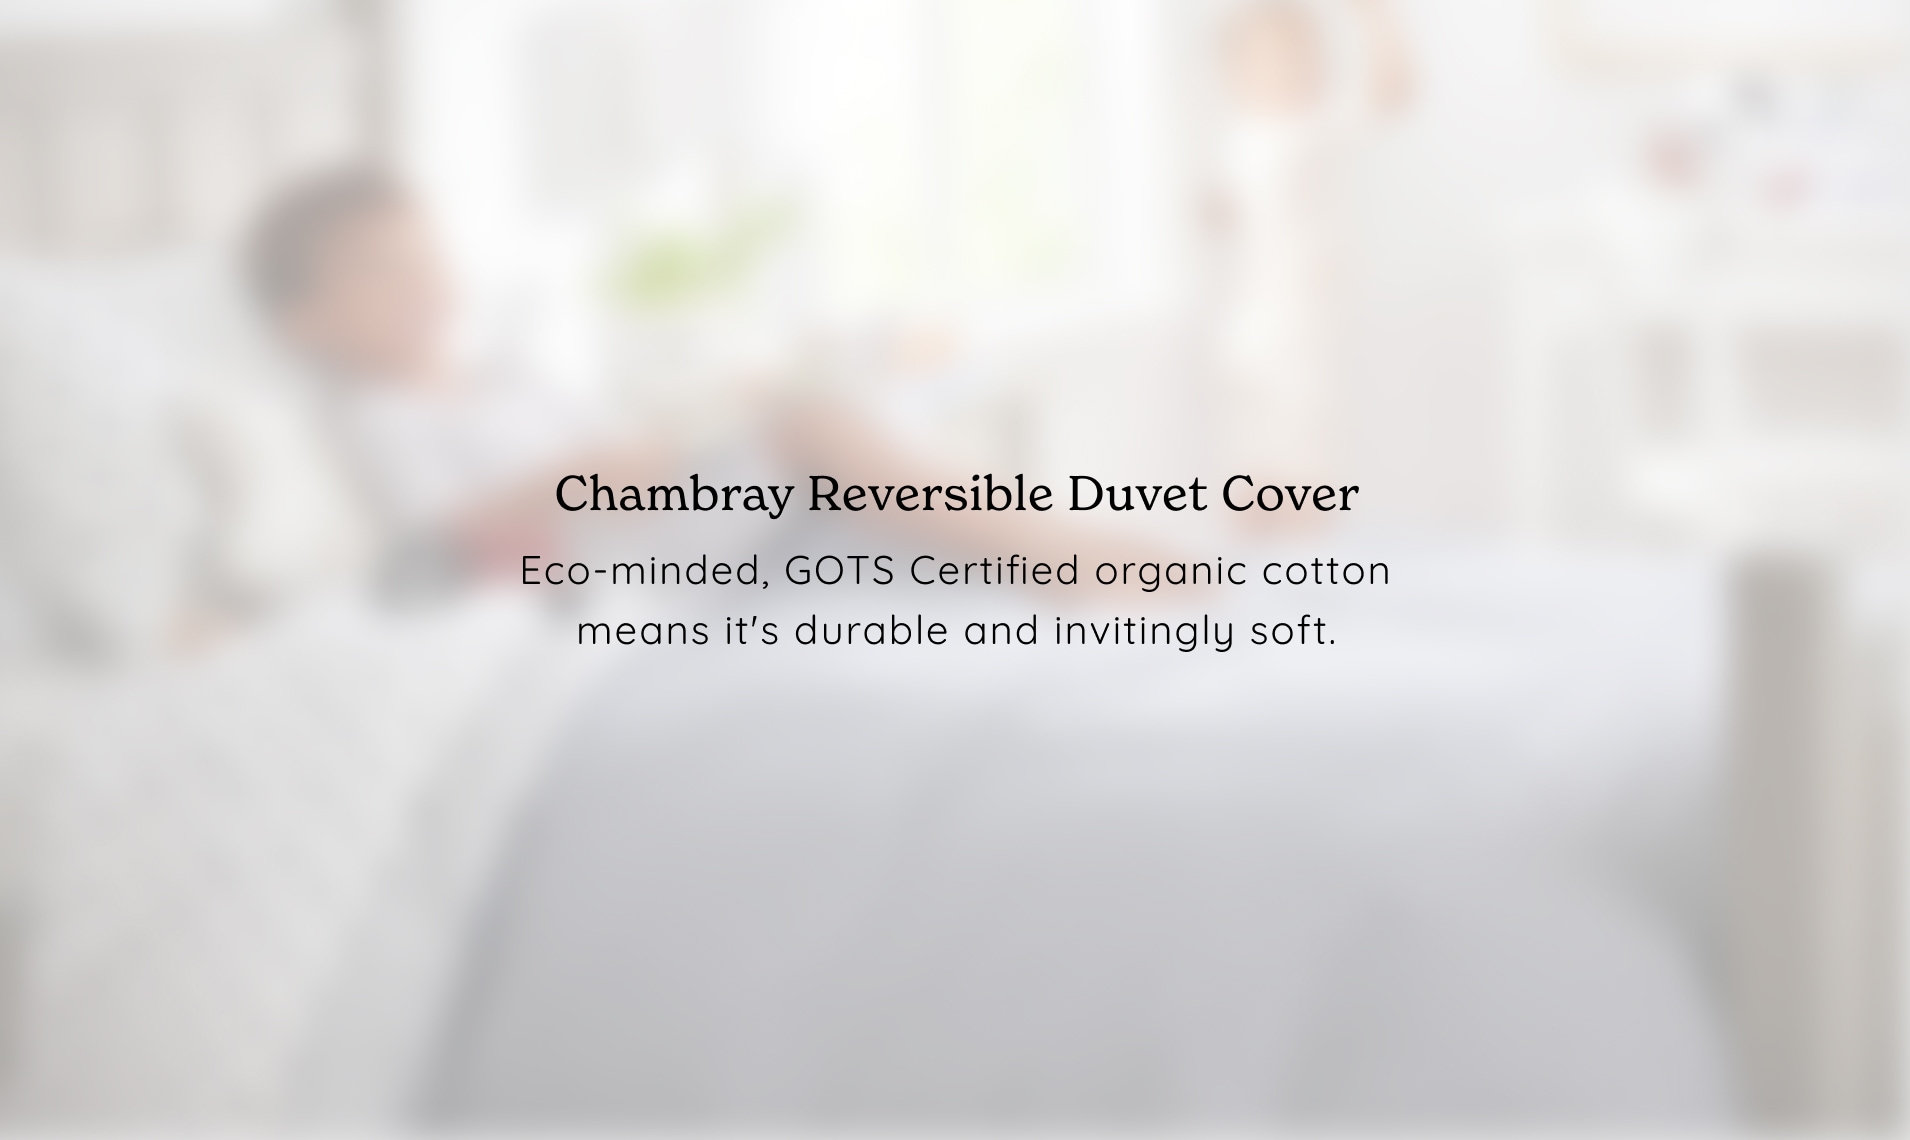 Chambray Reversible Duvet Cover